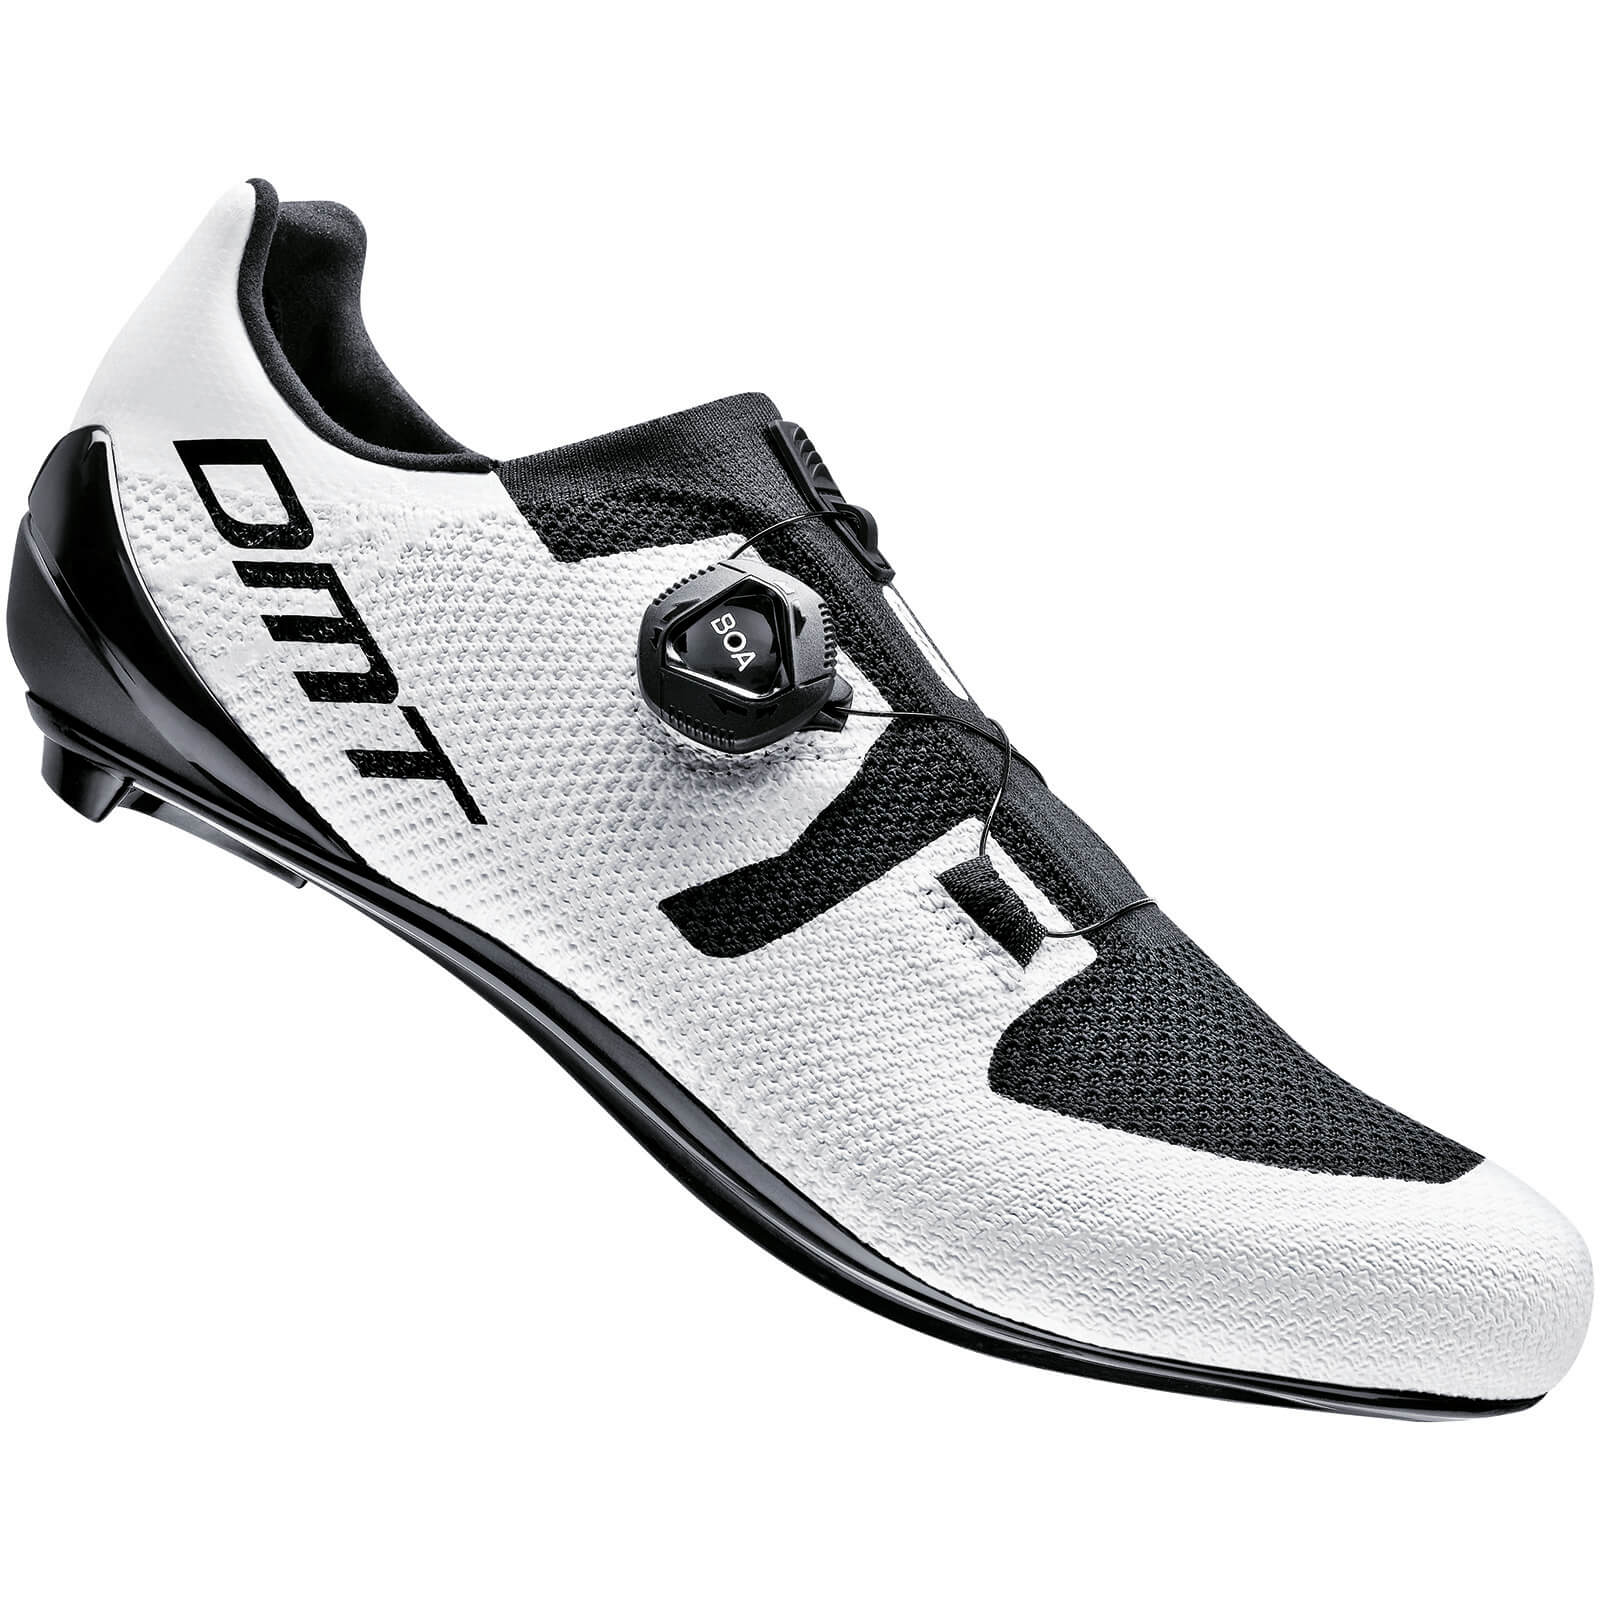 DMT KR3 Road Shoes - EU 43.5 - White/Black